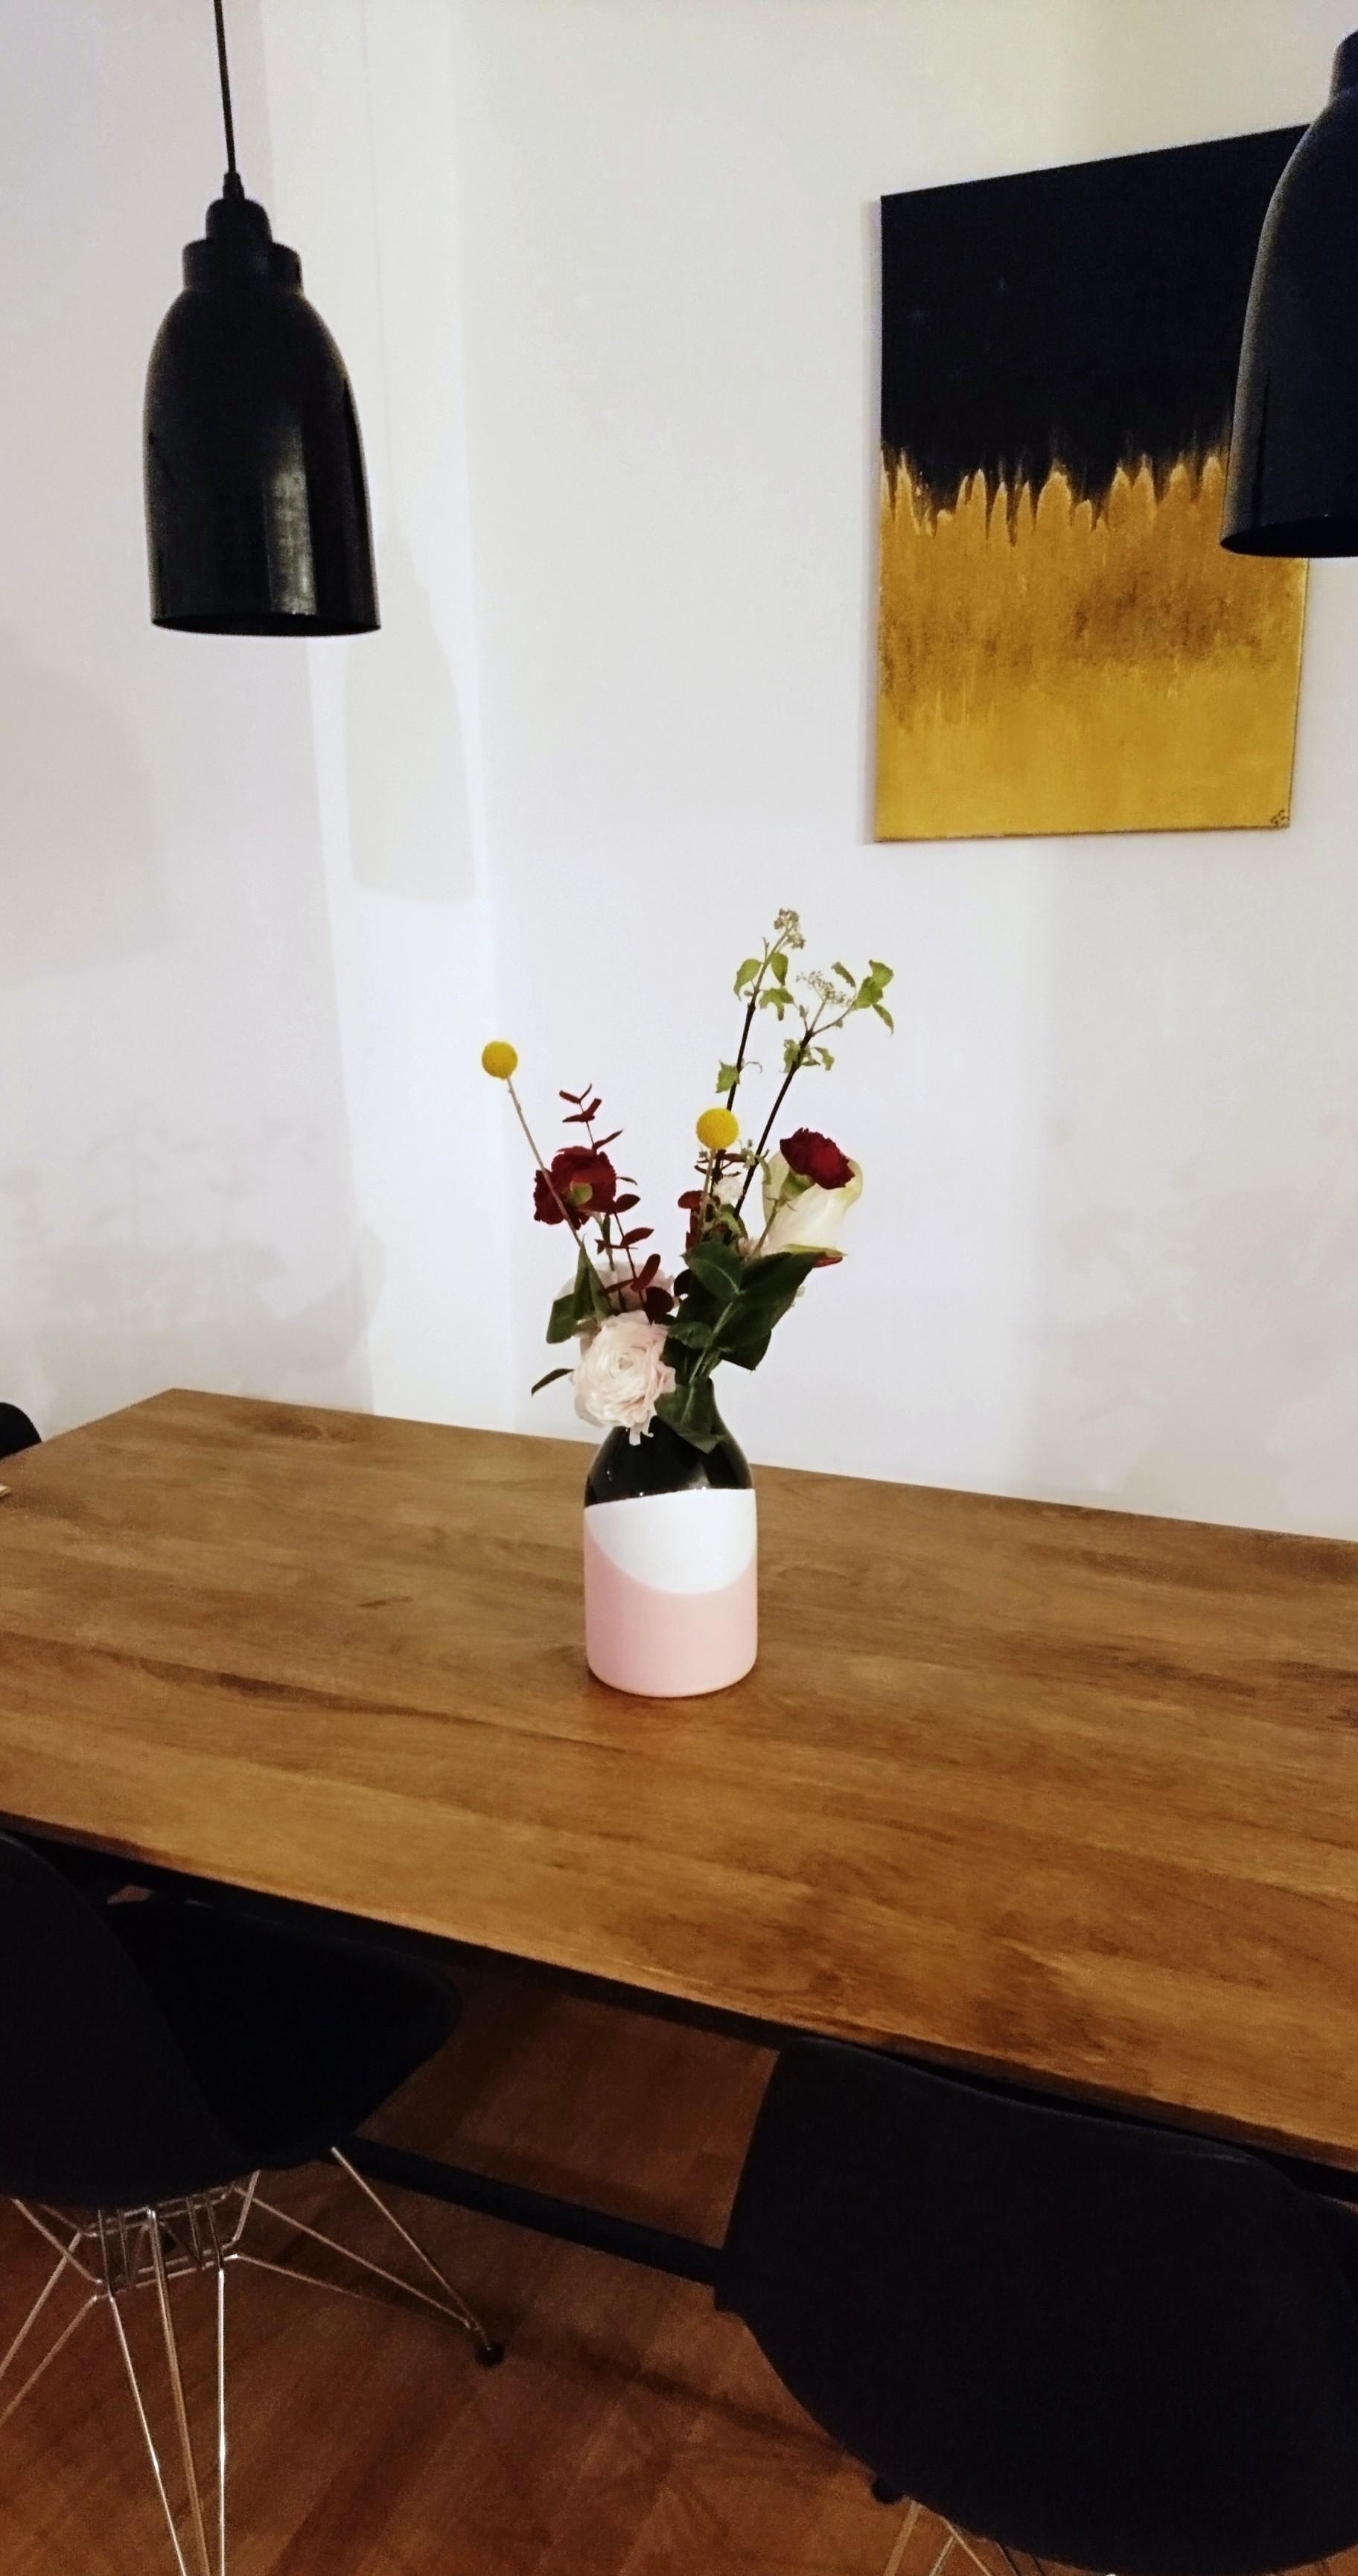 Esstischliebe 💕
#esstisch #living #home #wohnzimmer #Blumen #flower